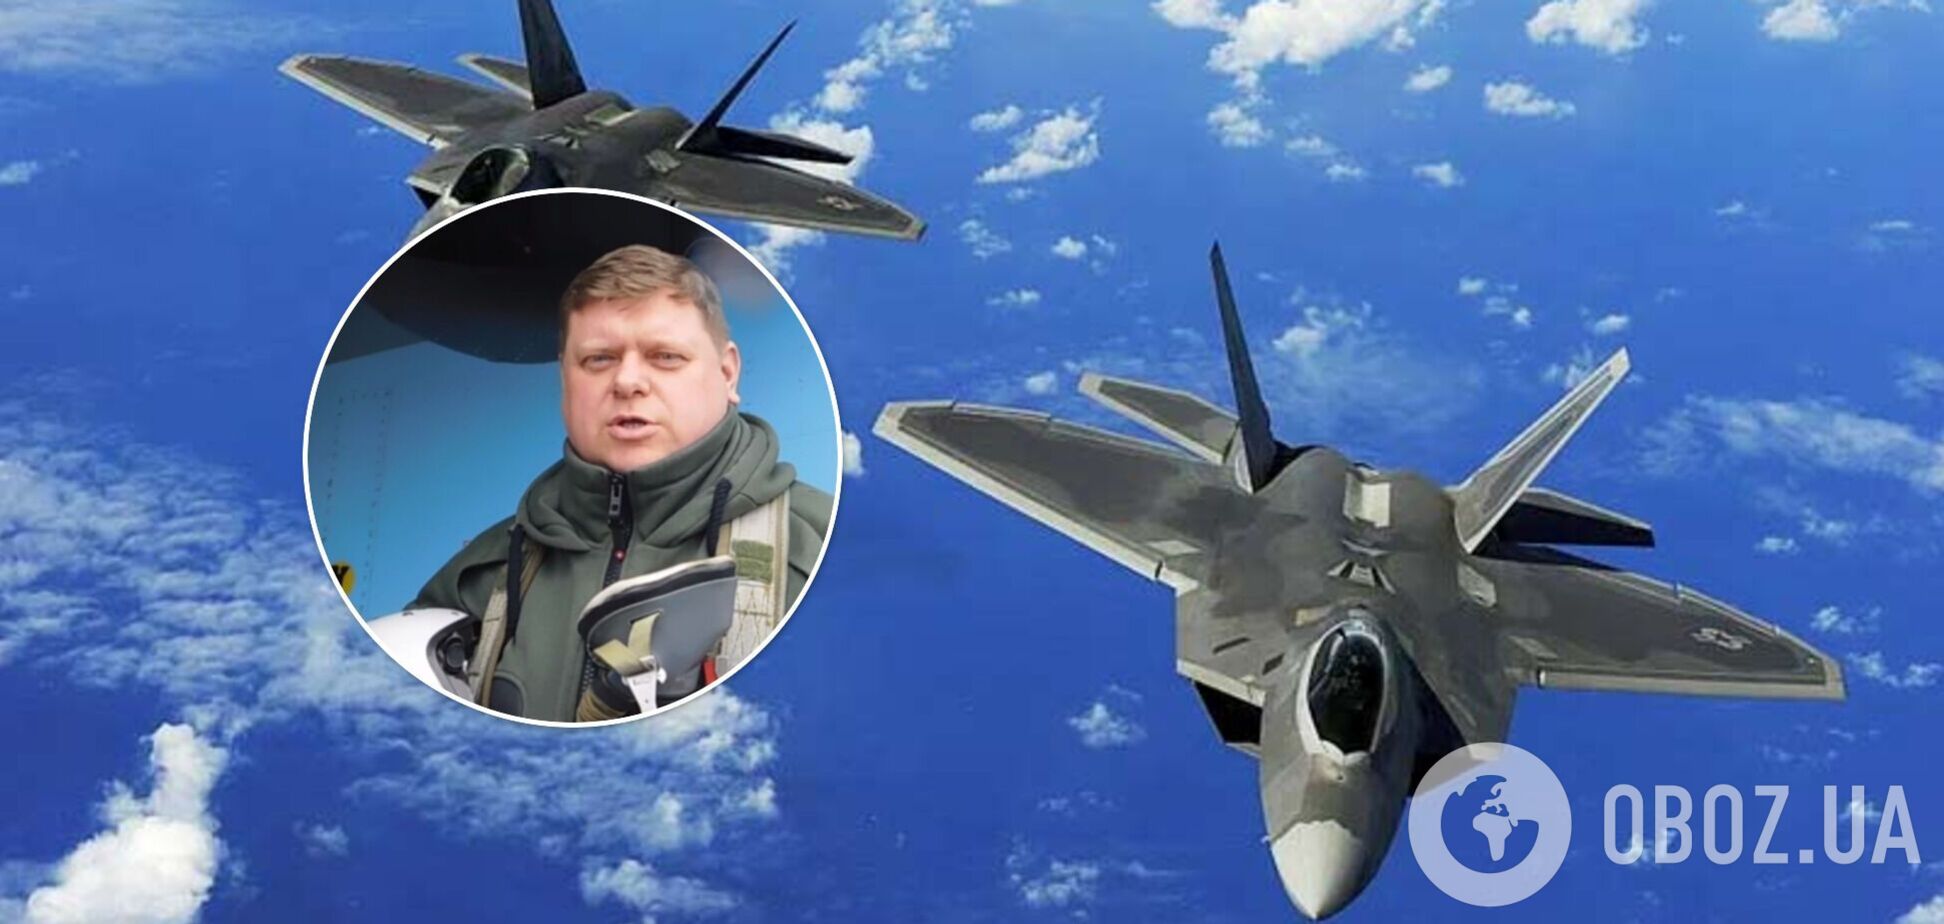 Высший пилотаж не спасает от российских ракет: знаменитый украинский пилот призвал передать Украине современные самолеты